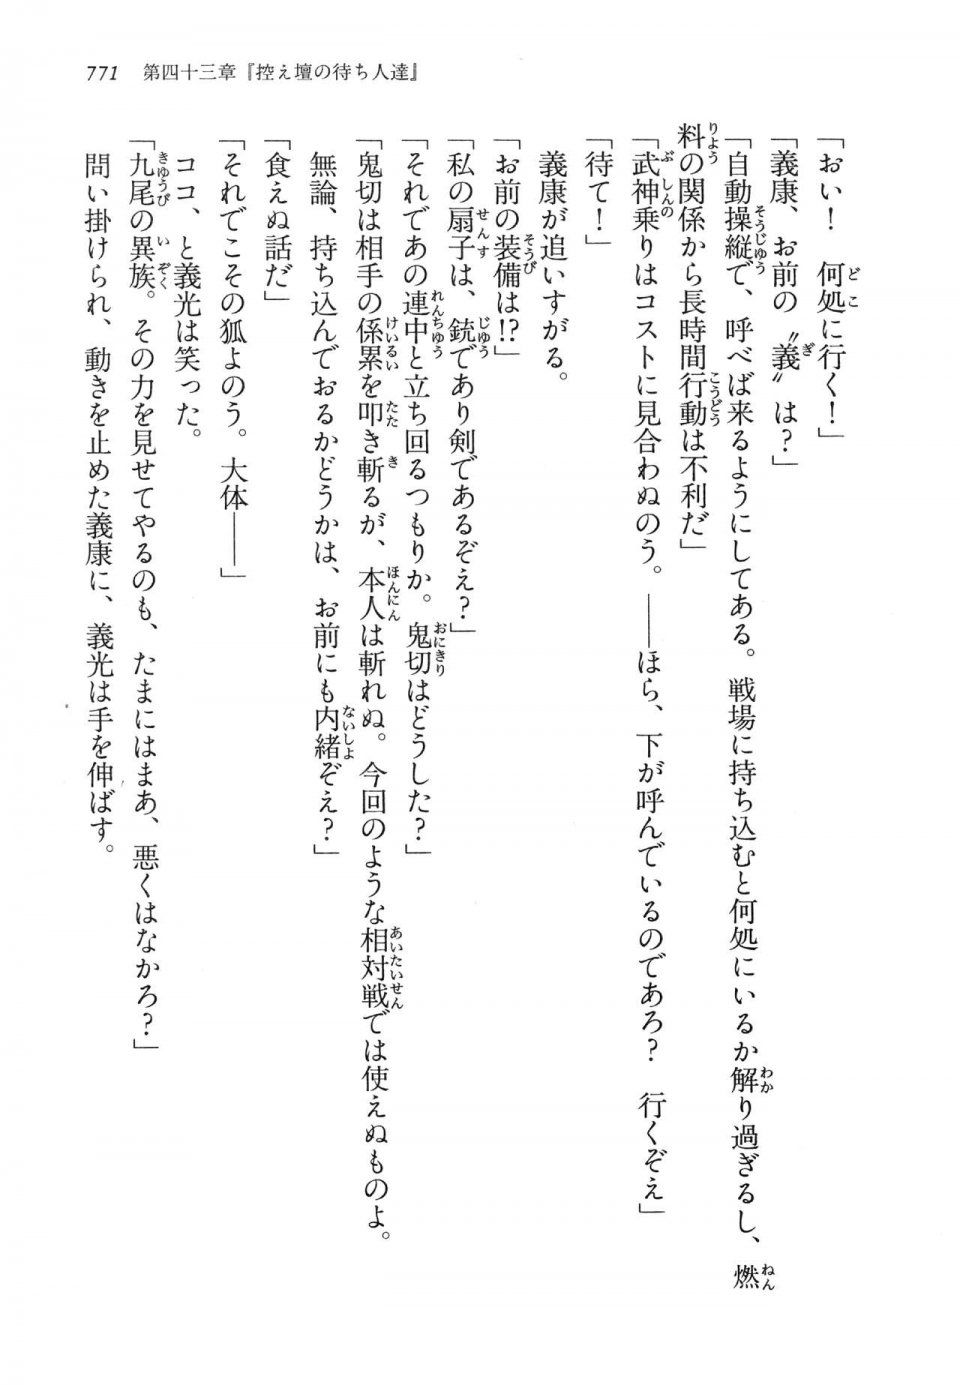 Kyoukai Senjou no Horizon LN Vol 14(6B) - Photo #771